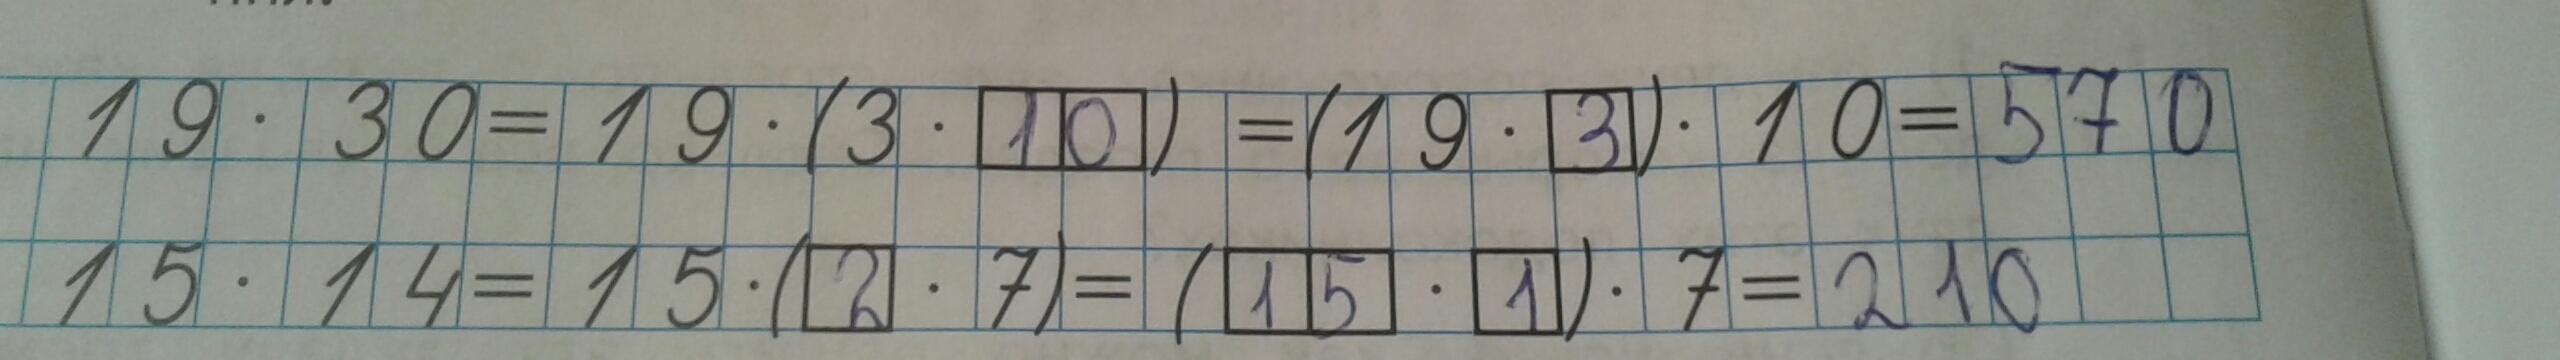 Вычисли 400 40. (148-24) :4+14•1006 Вычислите. Вычислите 27/40 18. Вычислите: 27 9 :18 . 40 16. Вычислите (148-24):4+14*1006 5 класс.